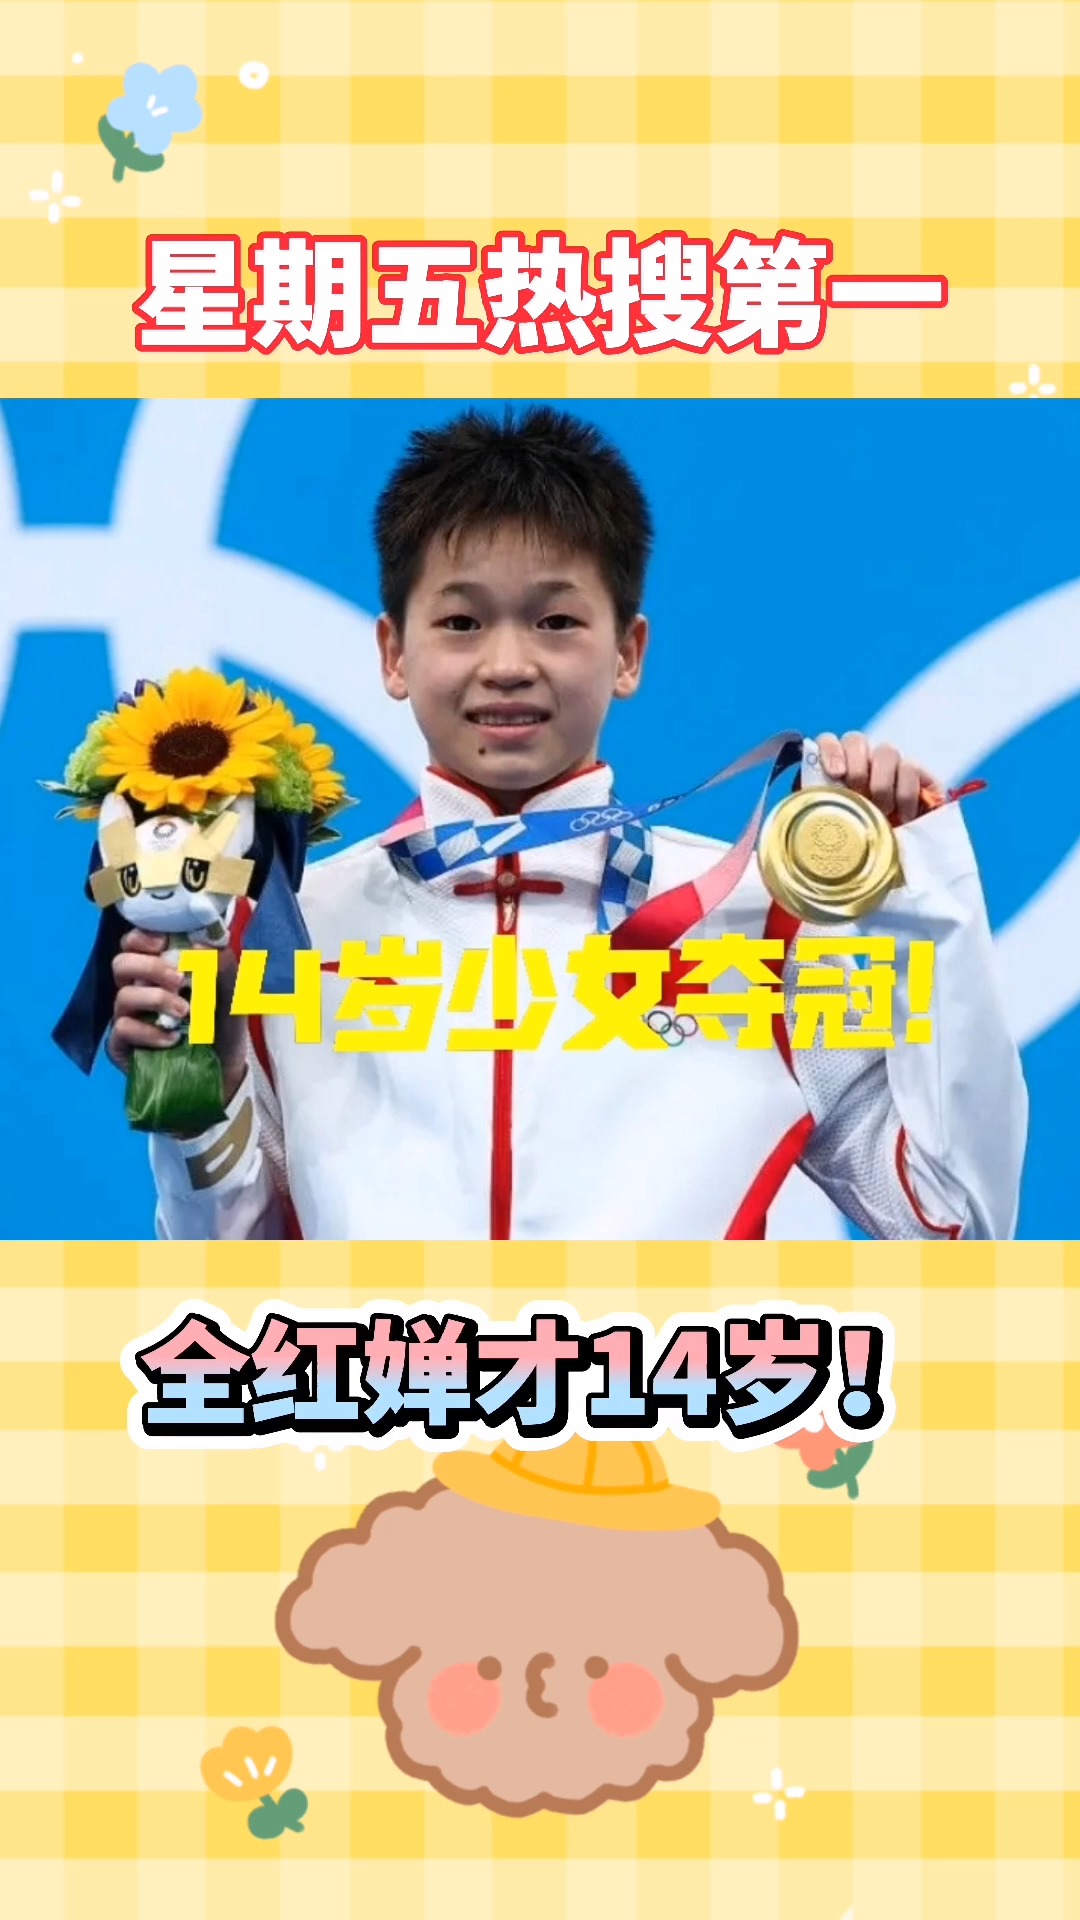 东京奥运会#14岁少女全红婵获得奥运会冠军!